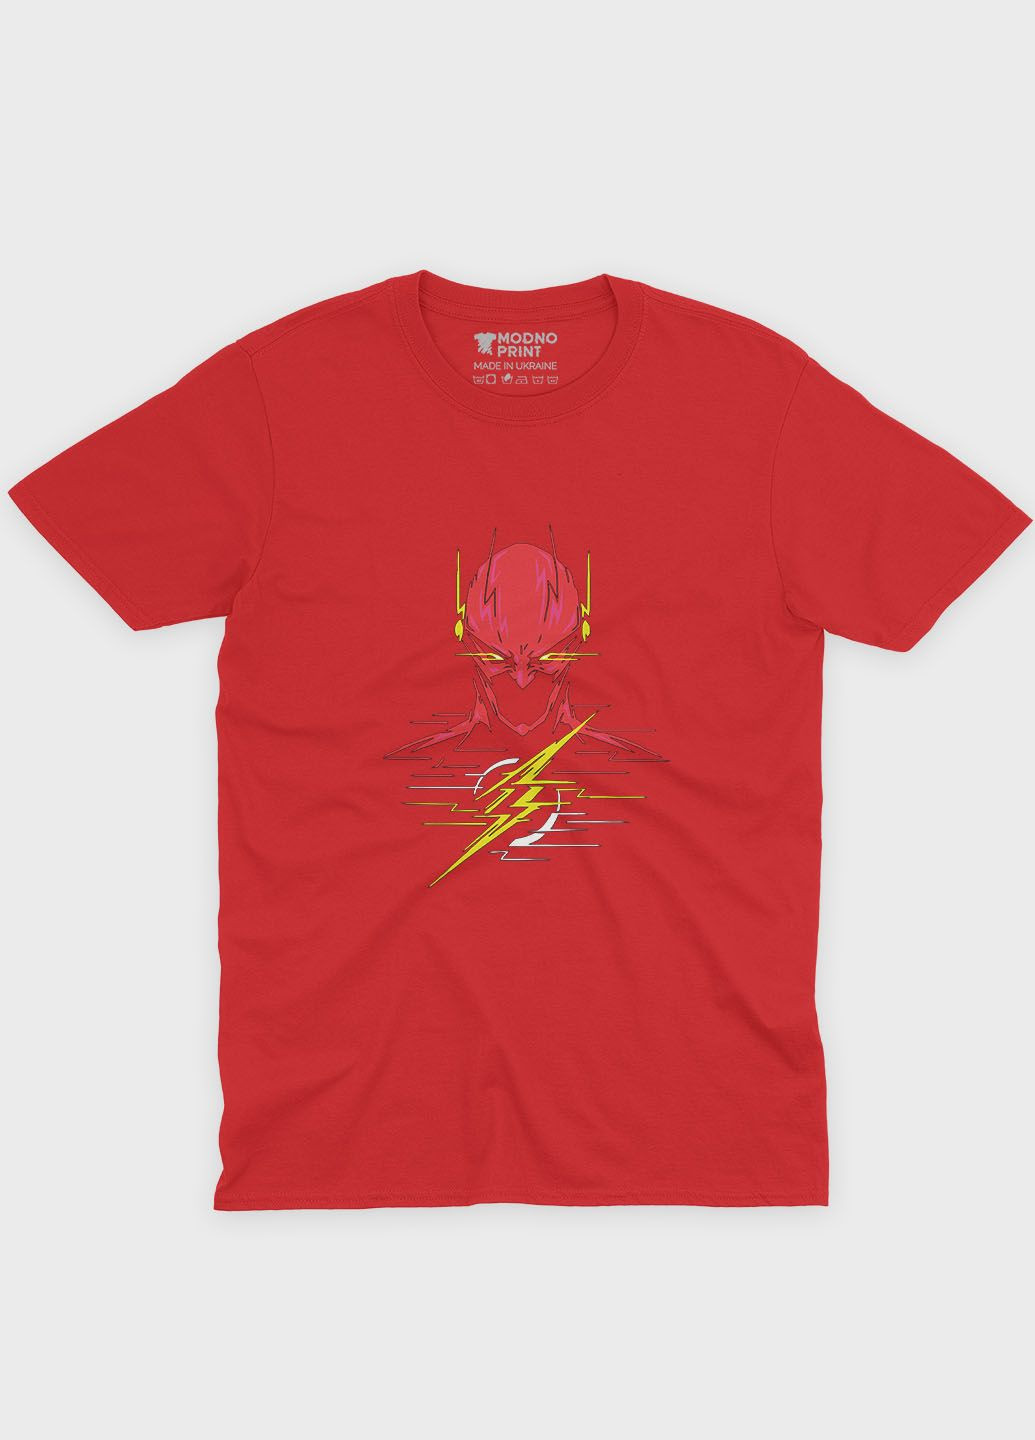 Червона демісезонна футболка для дівчинки з принтом супергероя - флеш (ts001-1-sre-006-010-005-g) Modno